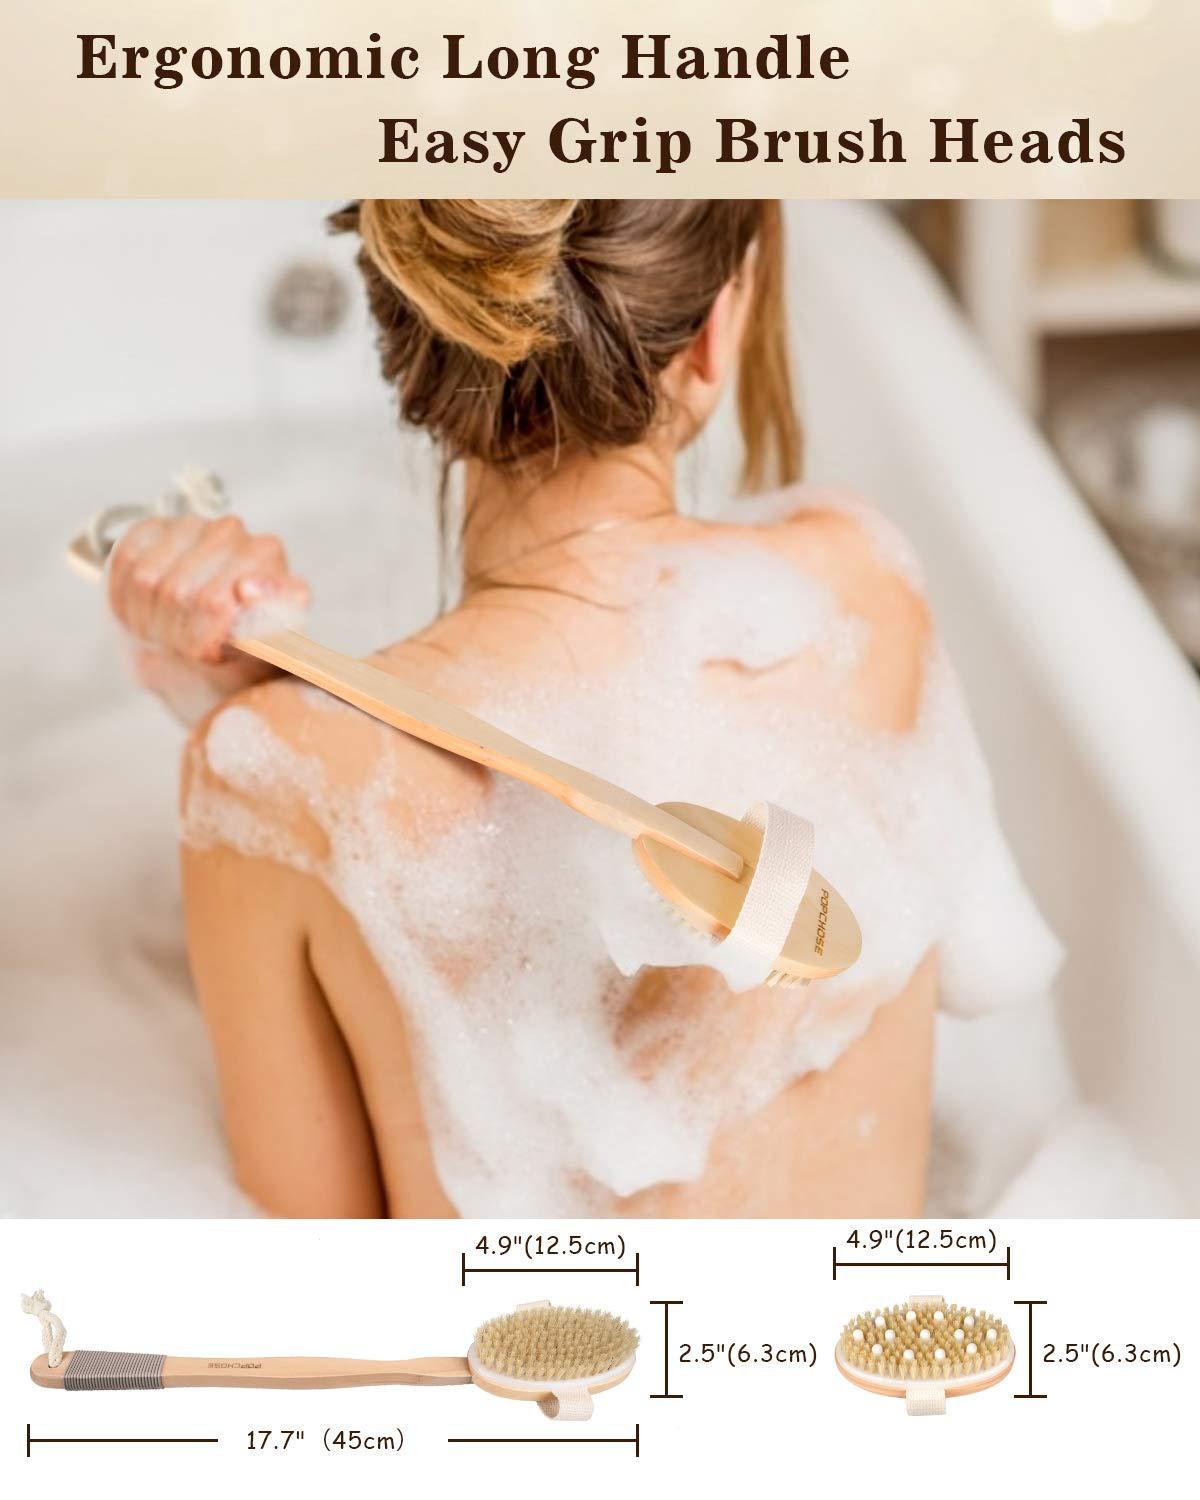 Bath & Relax Bath Body Brush Natural Bristles Long Handled Shower Back Scrubber  Brush - Exfoliating Scrub Skin Brush - Back Shower Brush - Dry or Wet Body  Brushing - For Men and Women